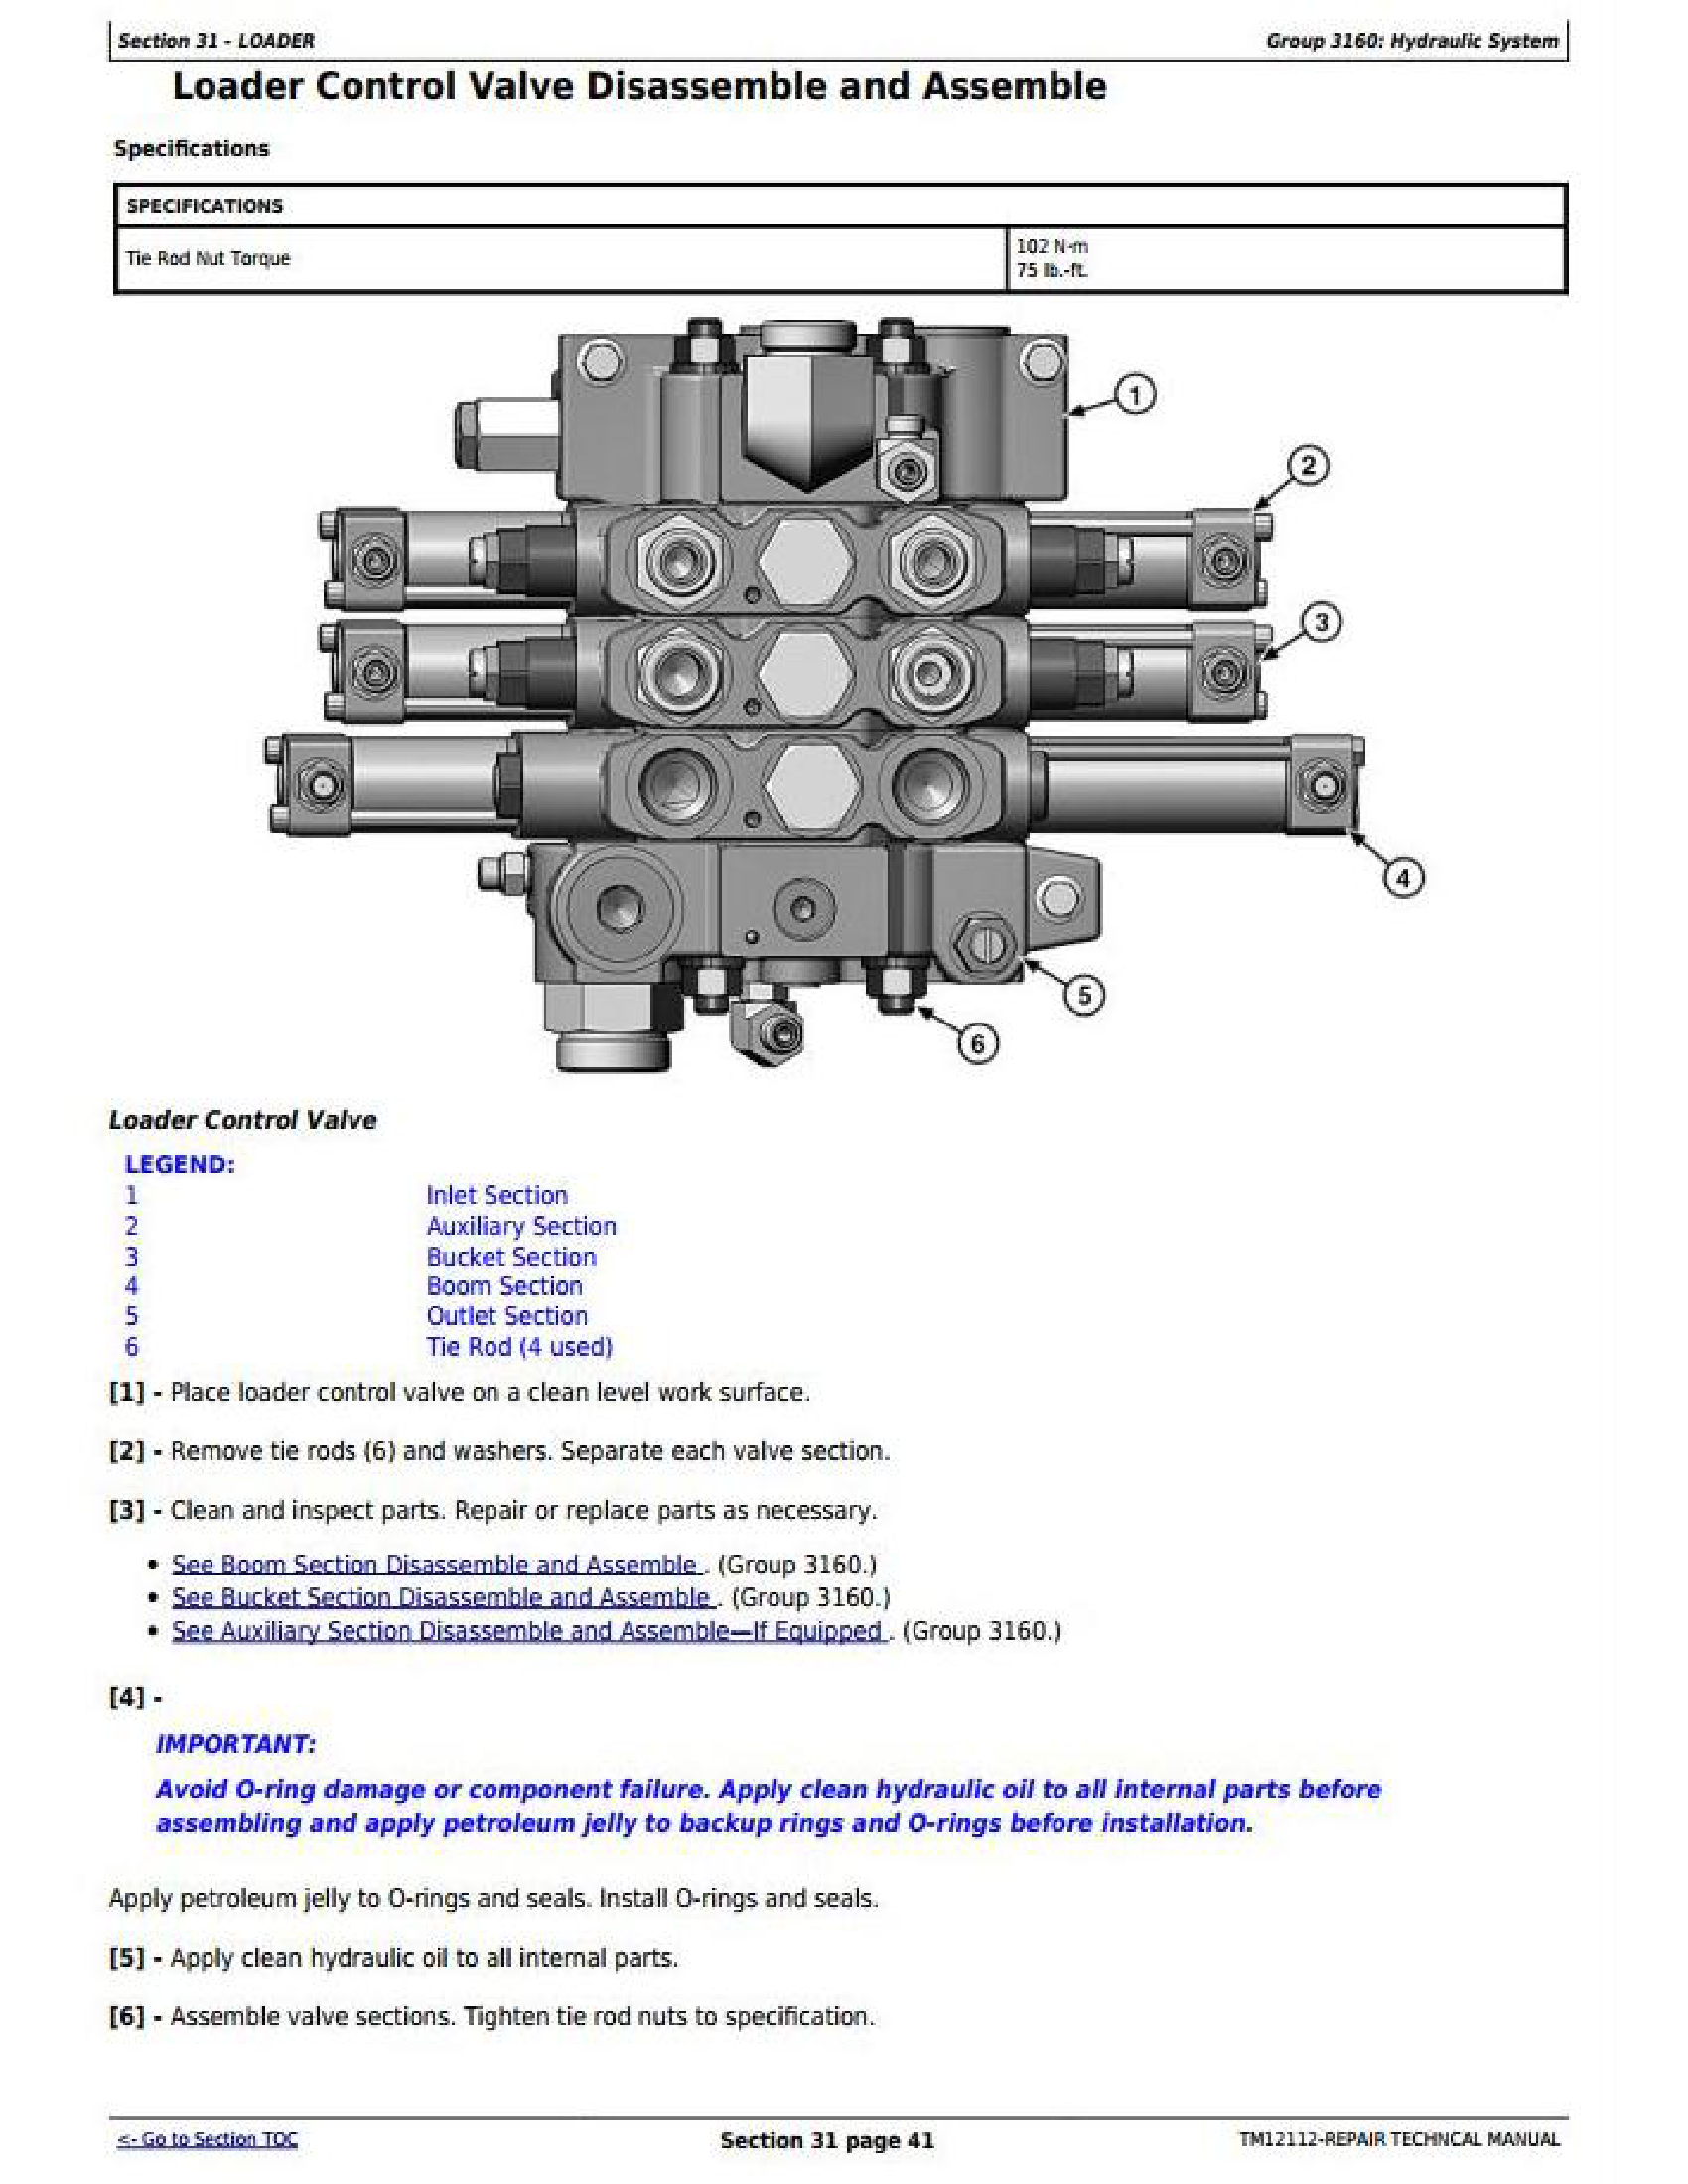 John Deere 724K manual pdf